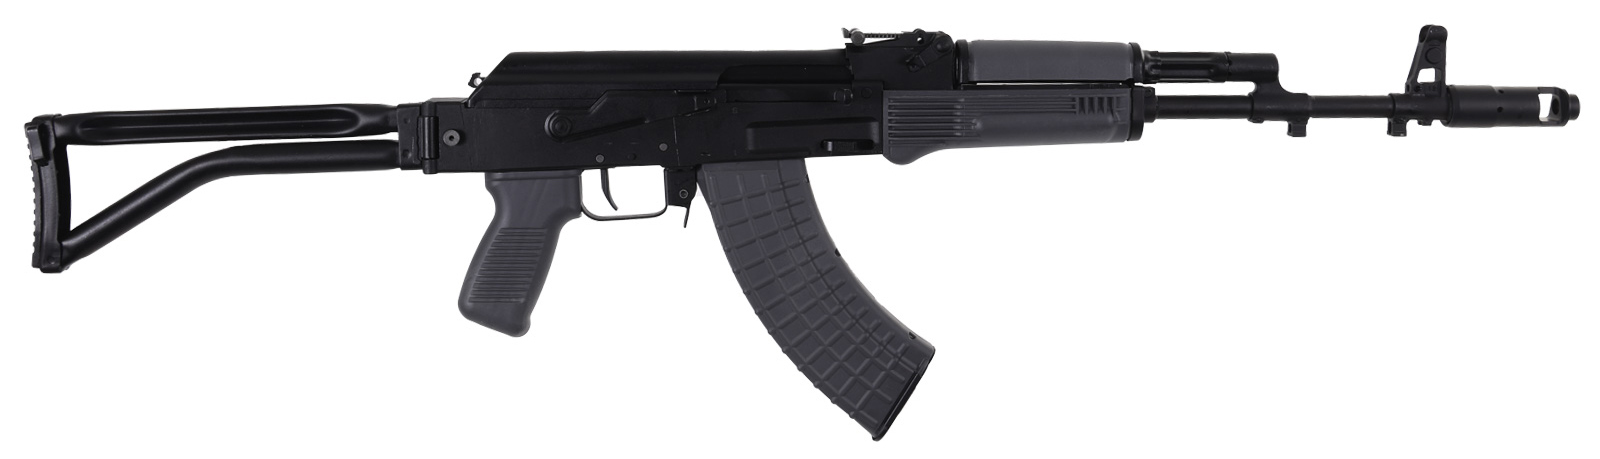 ARS SAM7SF 7.62X39 SIDE FOLDER ENHANCED FCG GRY - Rifles & Lower Receivers